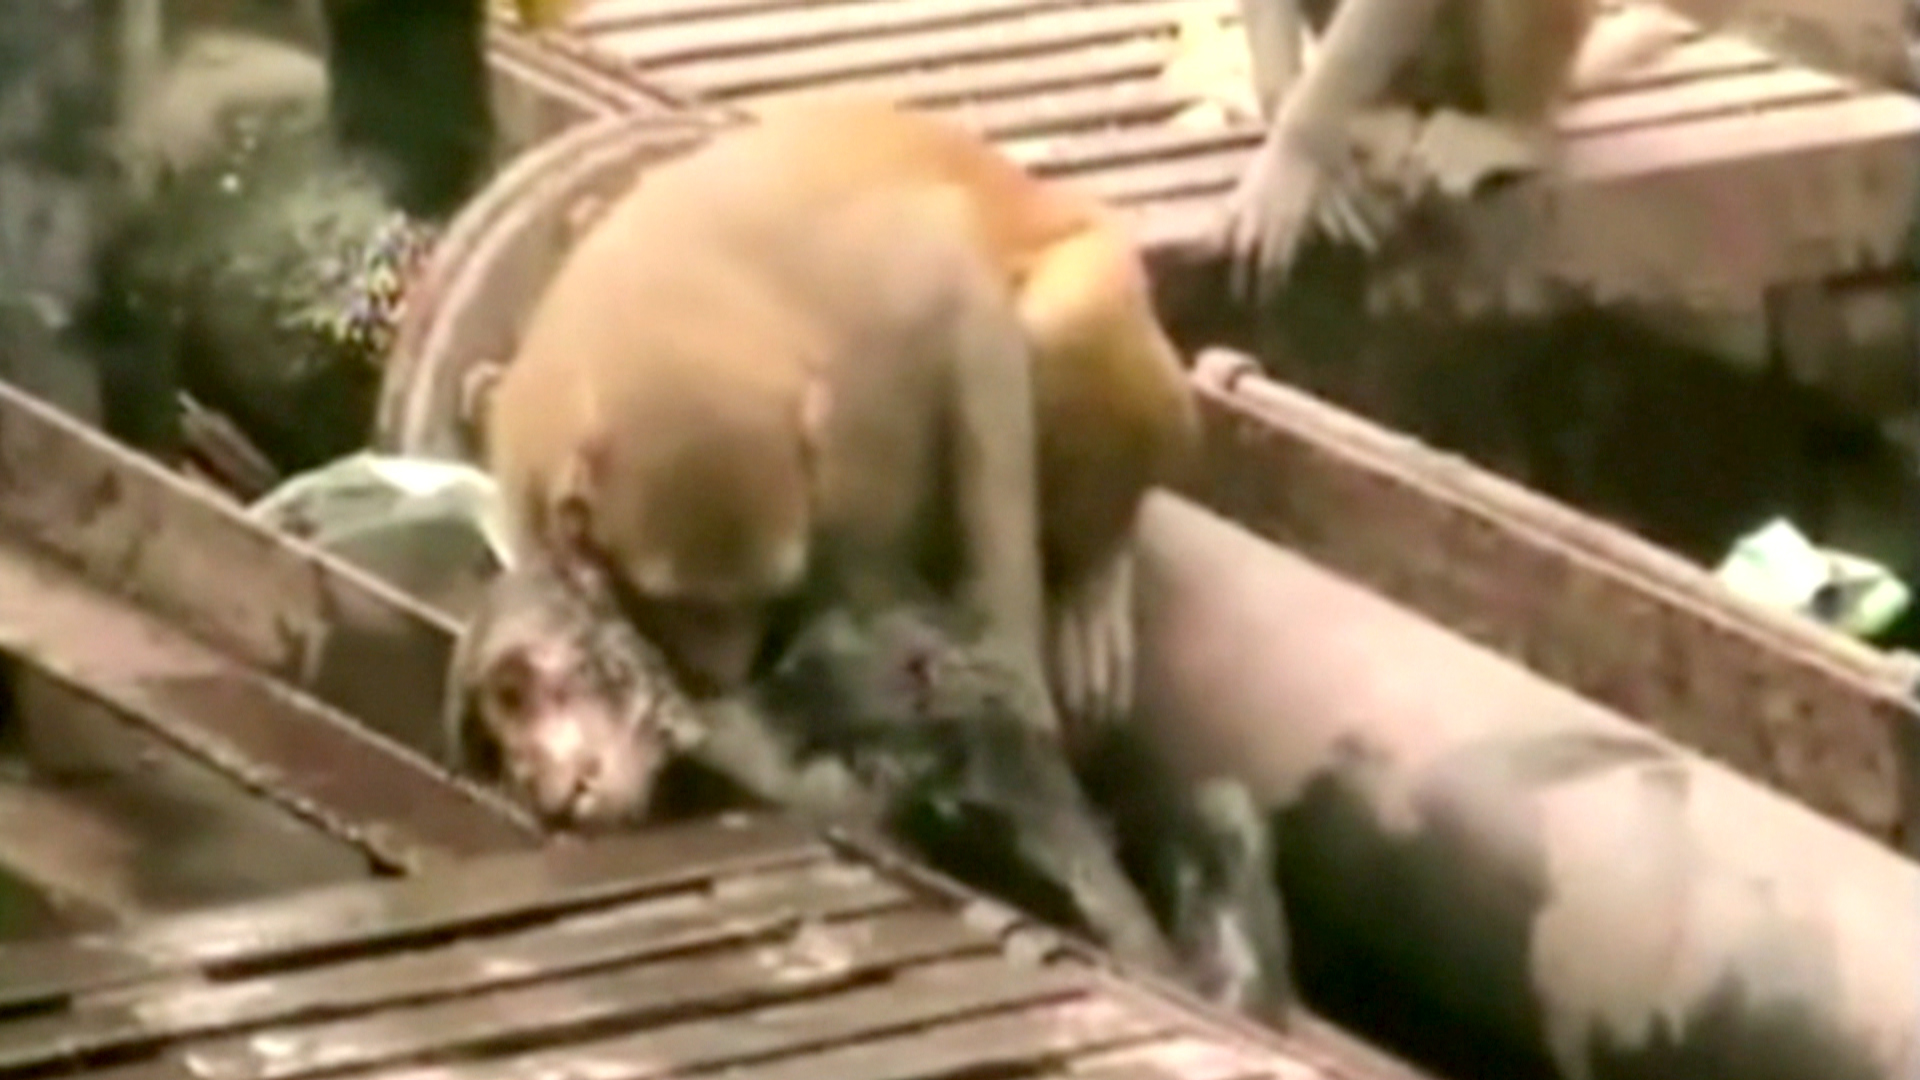 Monkey Revives Unconscious Friend After Accident